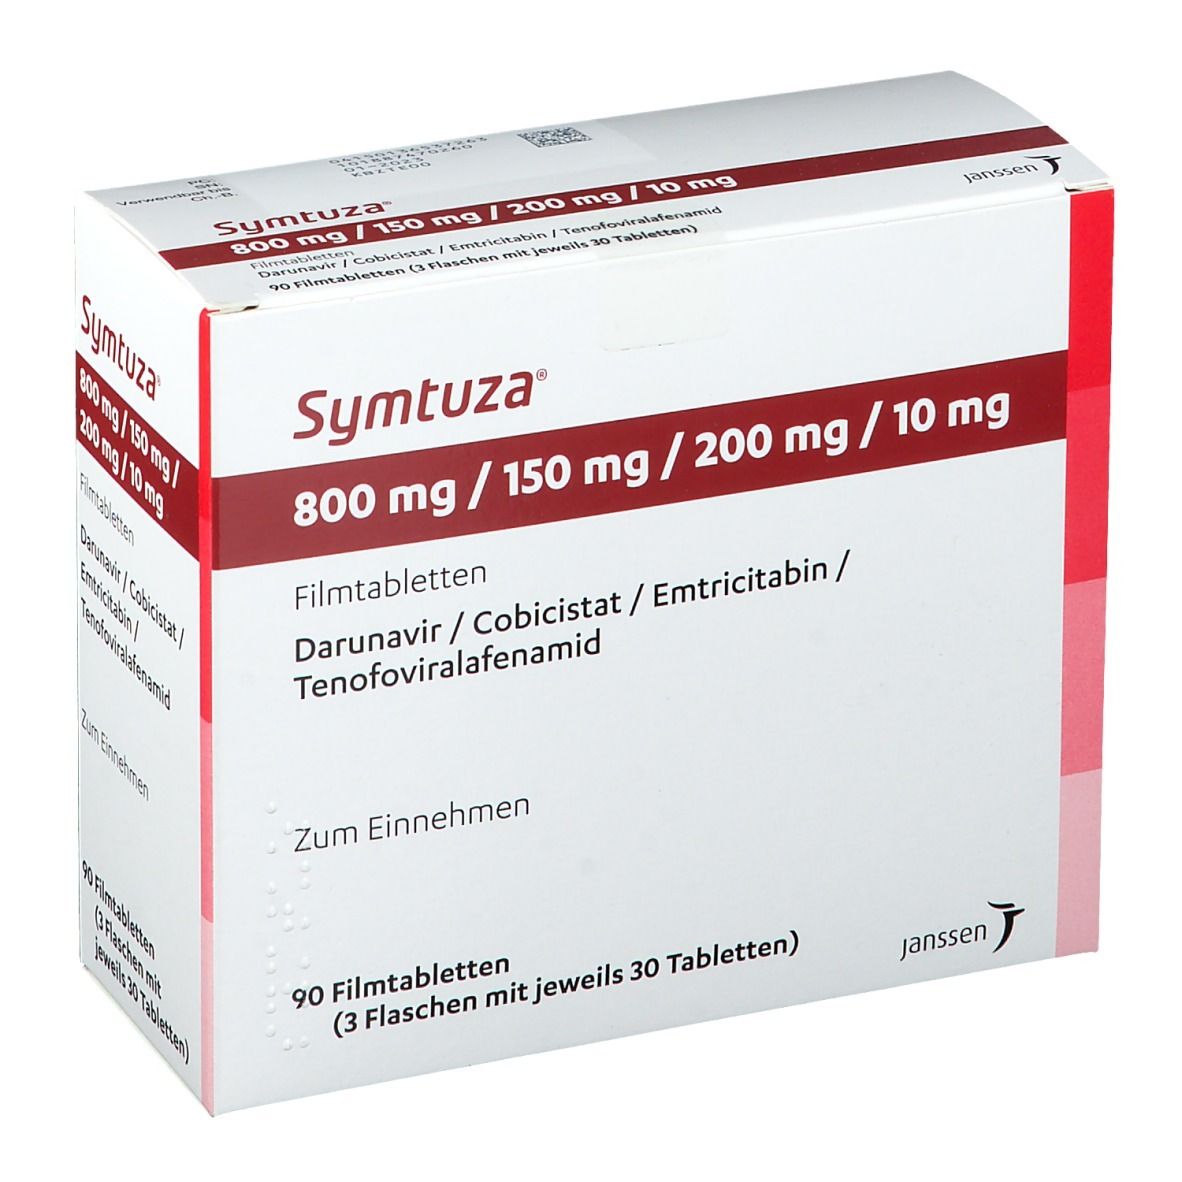 Symtuza® 800 mg/150 mg/200 mg/10 mg